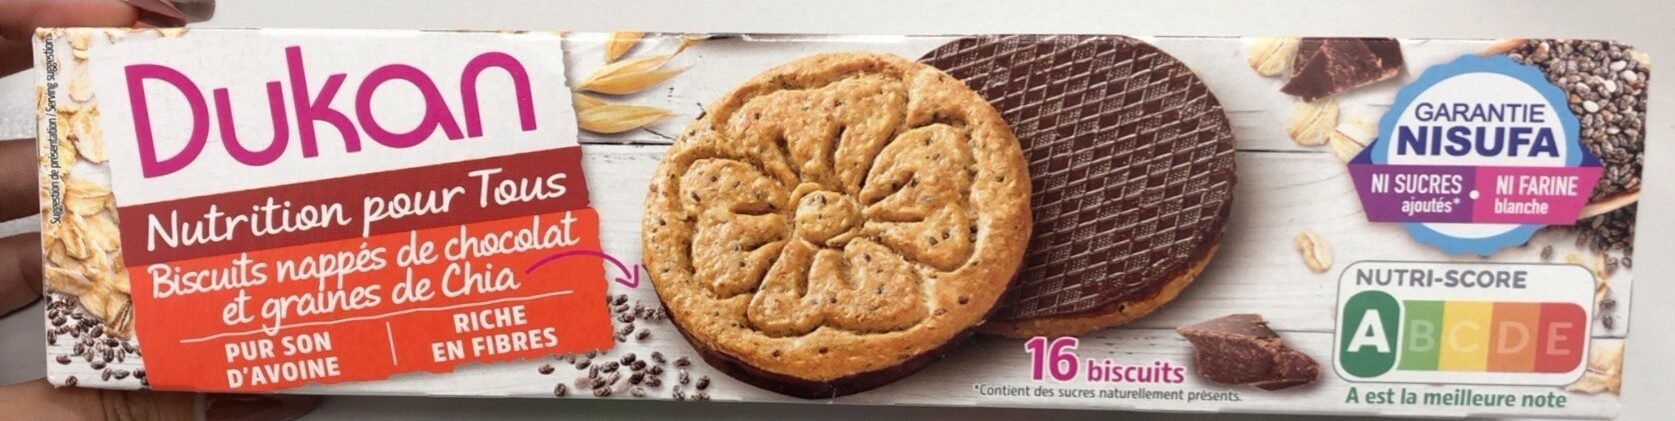 Biscuits nappés de chocolat - Product - fr